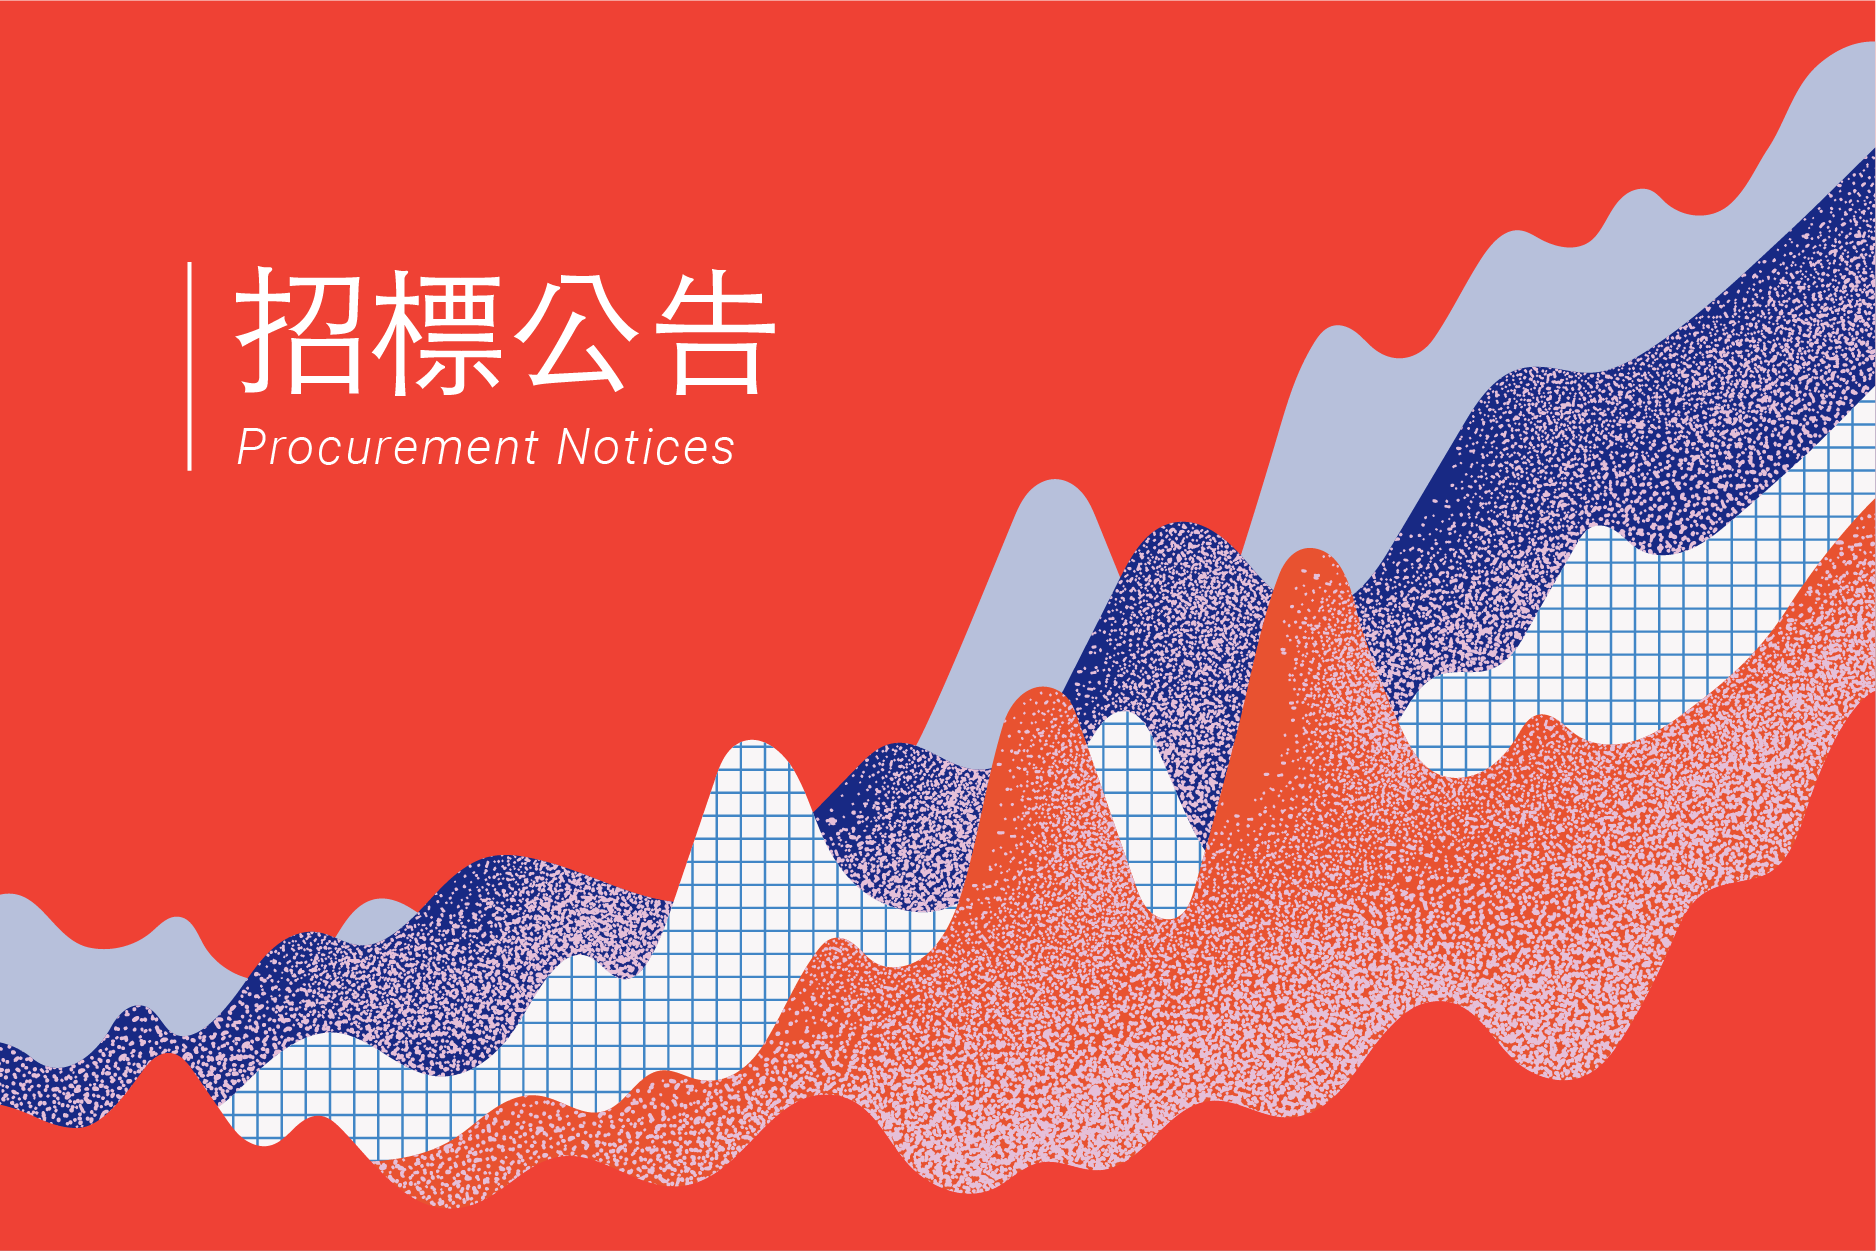 【第二次公告】2021年臺灣文化創意產業發展年報編印計畫勞務採購案(公開評選)